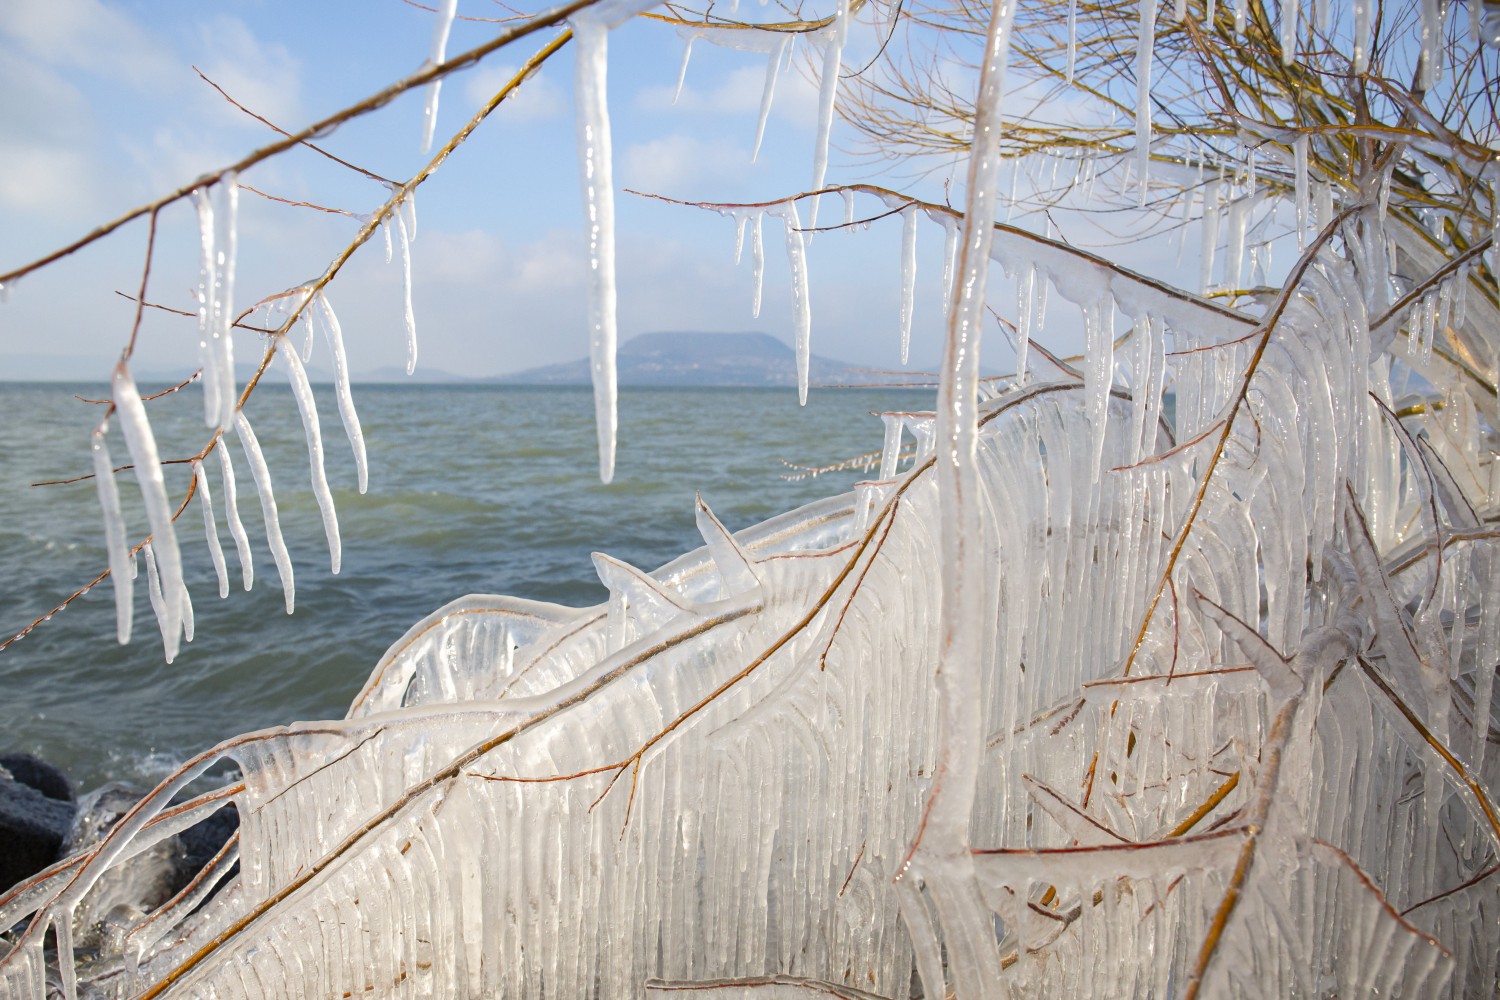 Csodálatos látványt nyújt a jeges Balaton, de rámerészkedni életveszélyes